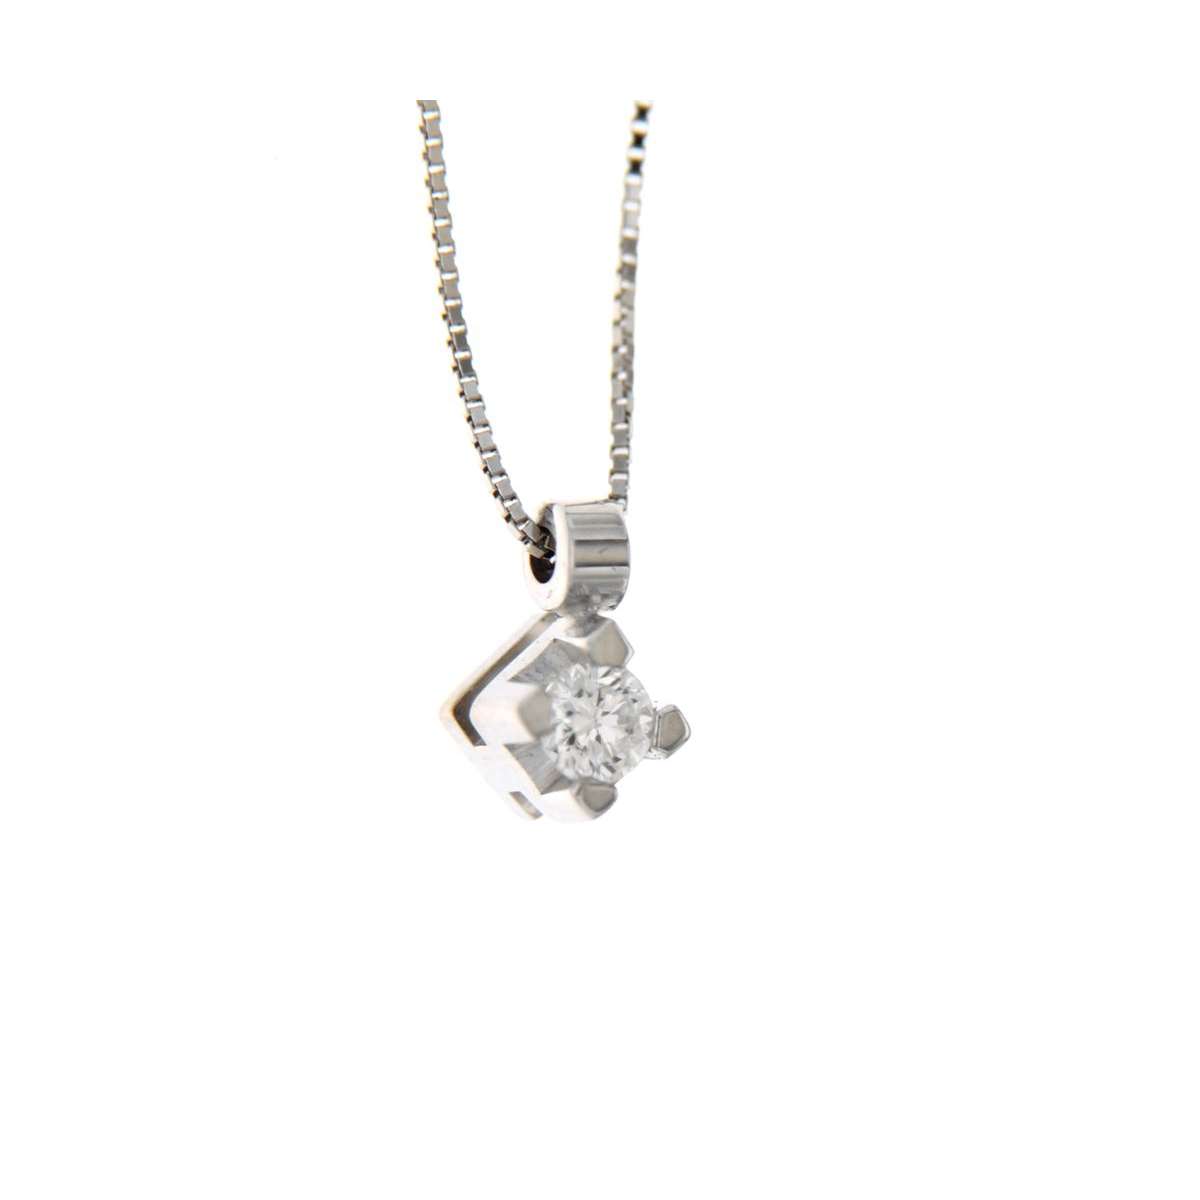 Solitaire necklace pendant carats diamond 0,07 G-VS1